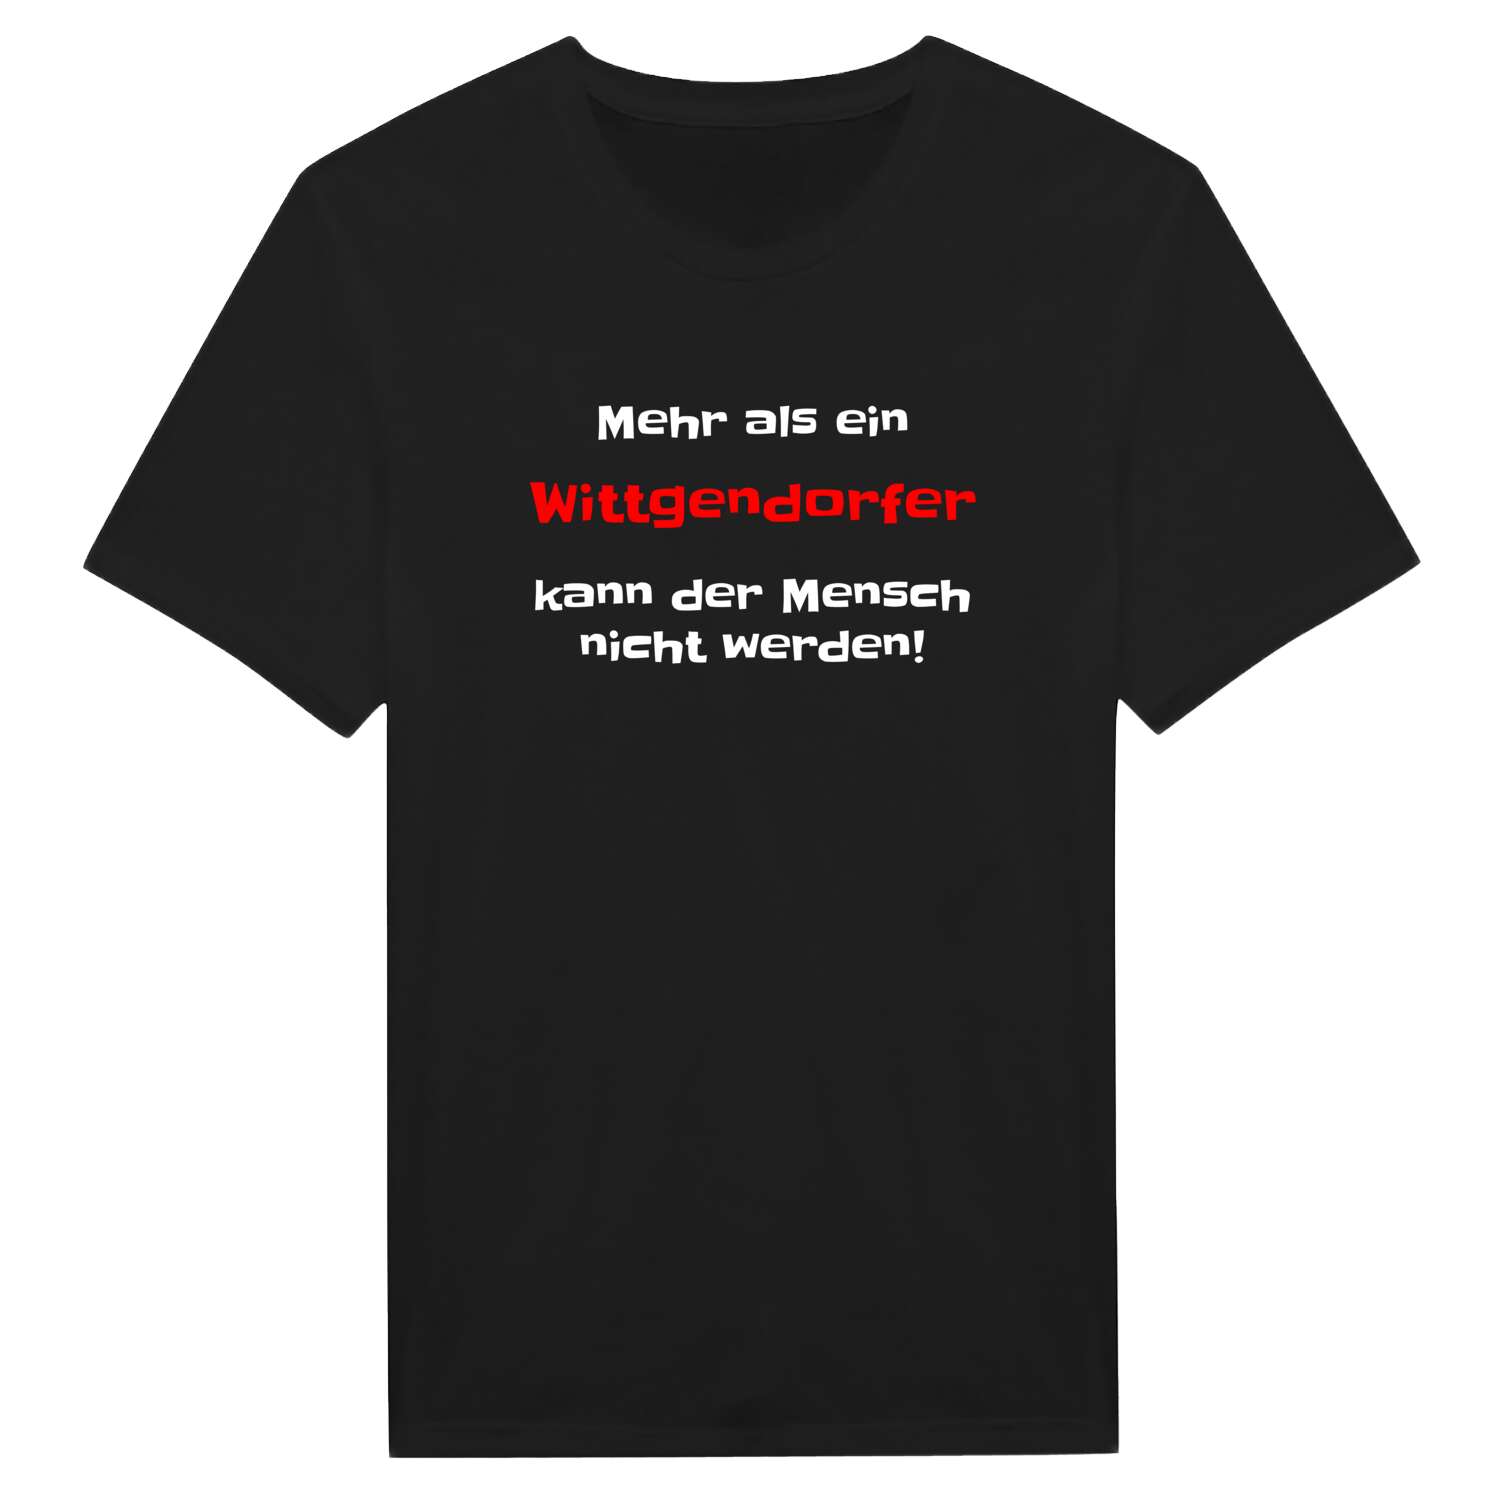 Wittgendorf T-Shirt »Mehr als ein«